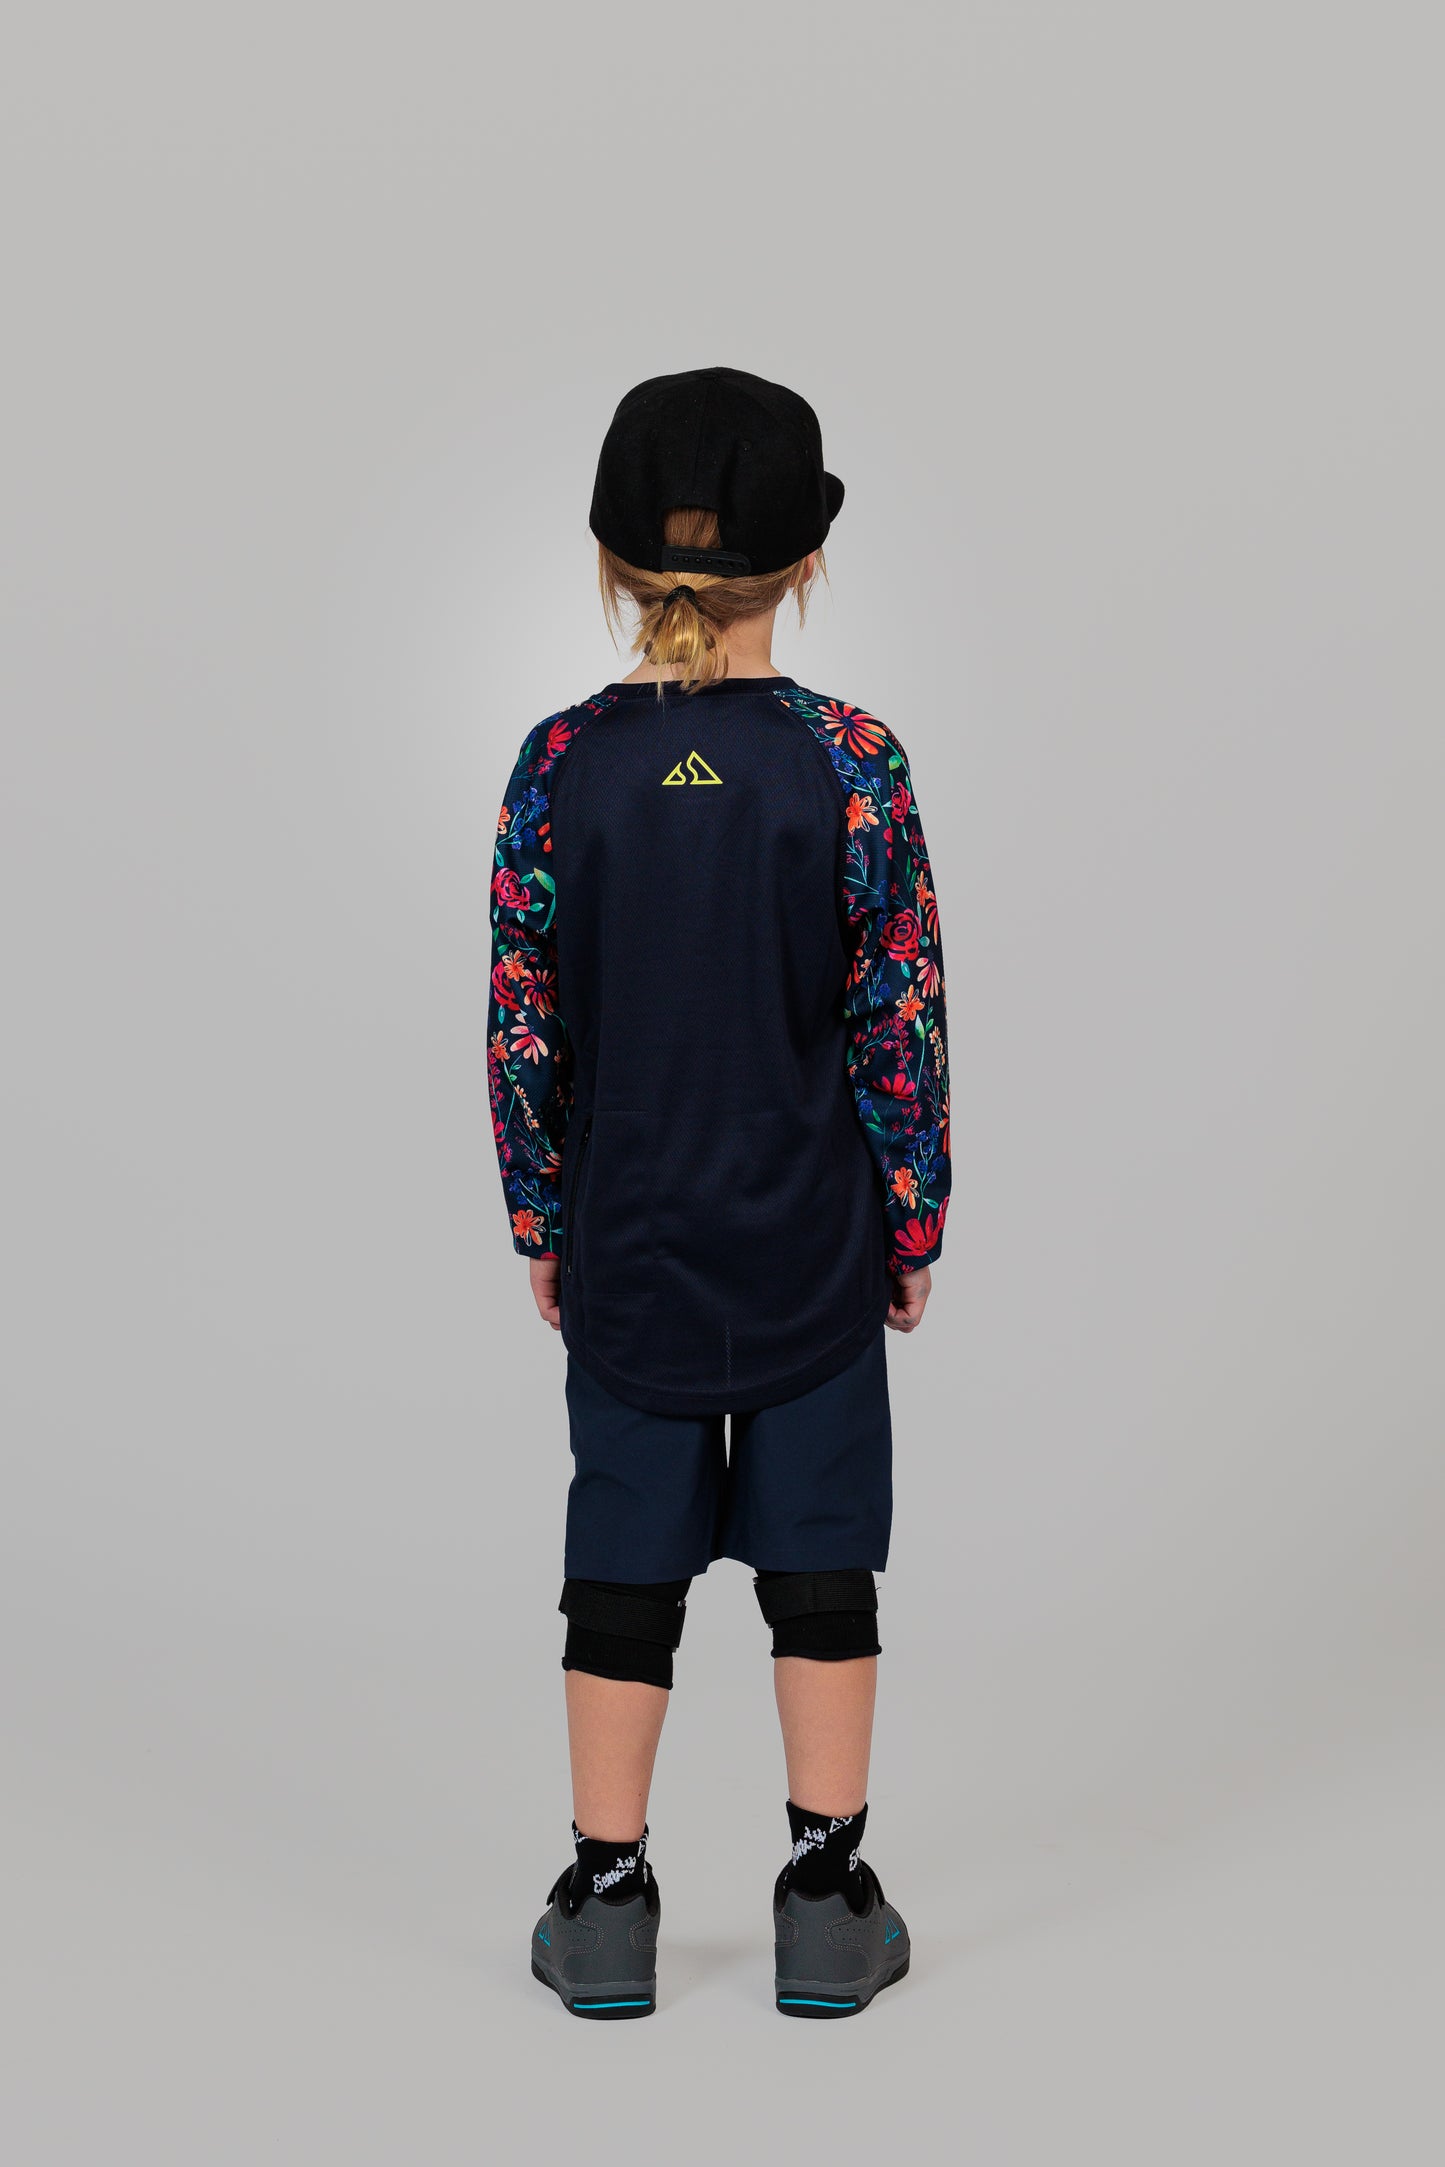 Send It Kids MTB Shorts | Wildflower - Peaky